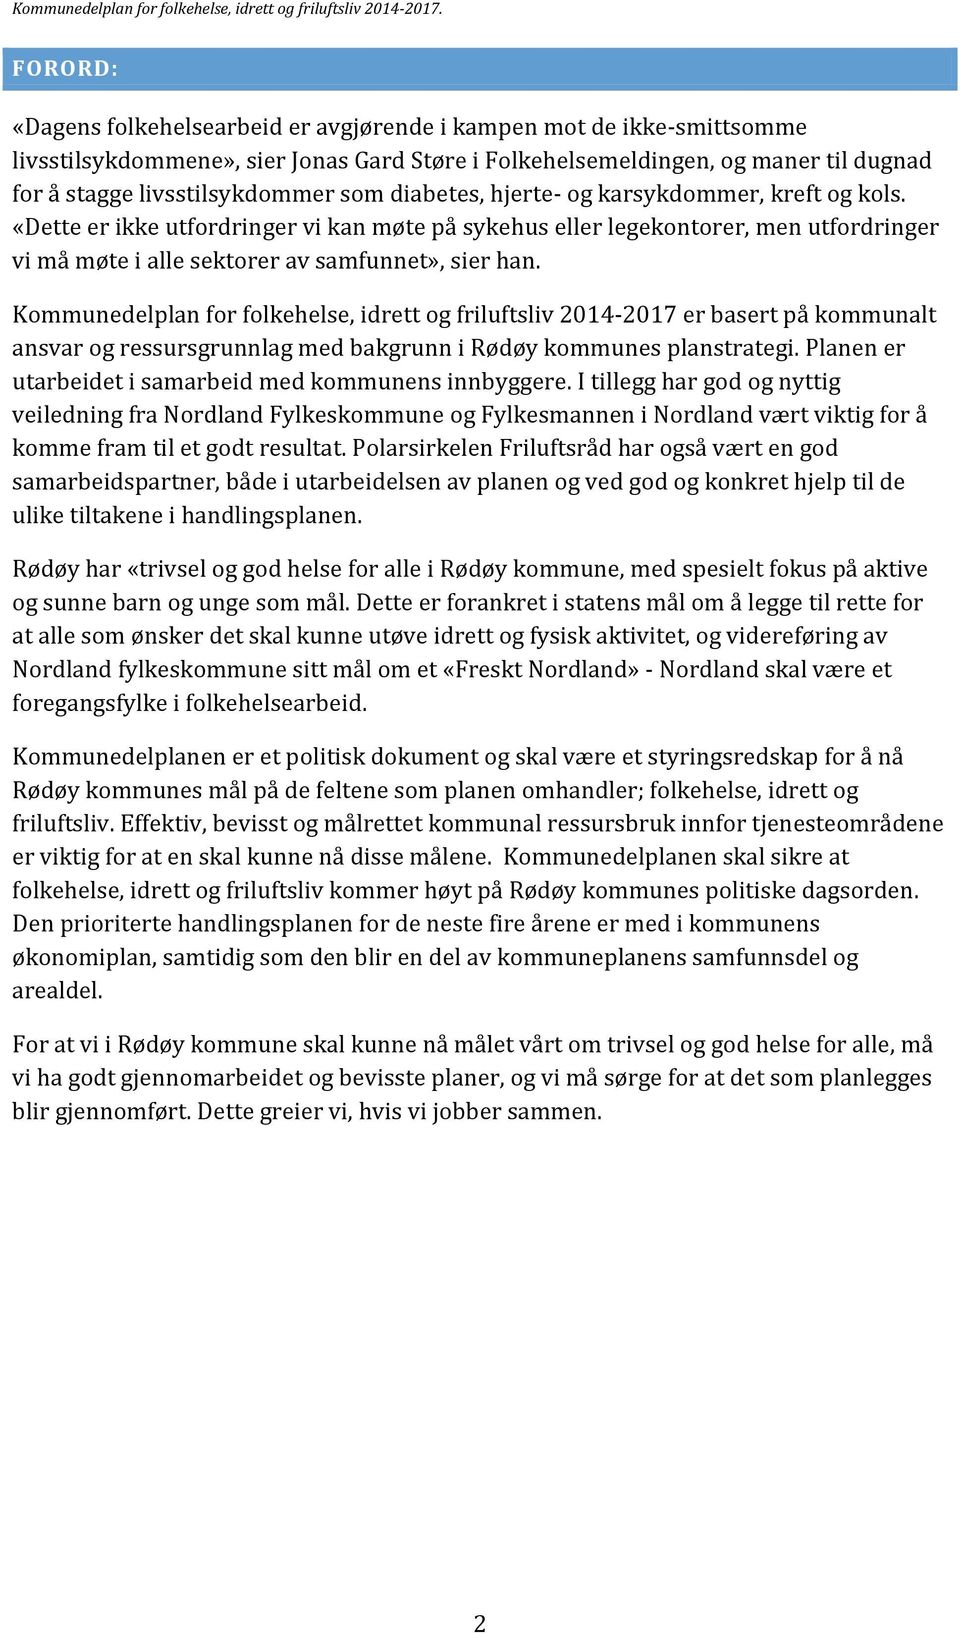 Kommunedelplan for folkehelse, idrett og friluftsliv 2014-2017 er basert på kommunalt ansvar og ressursgrunnlag med bakgrunn i Rødøy kommunes planstrategi.